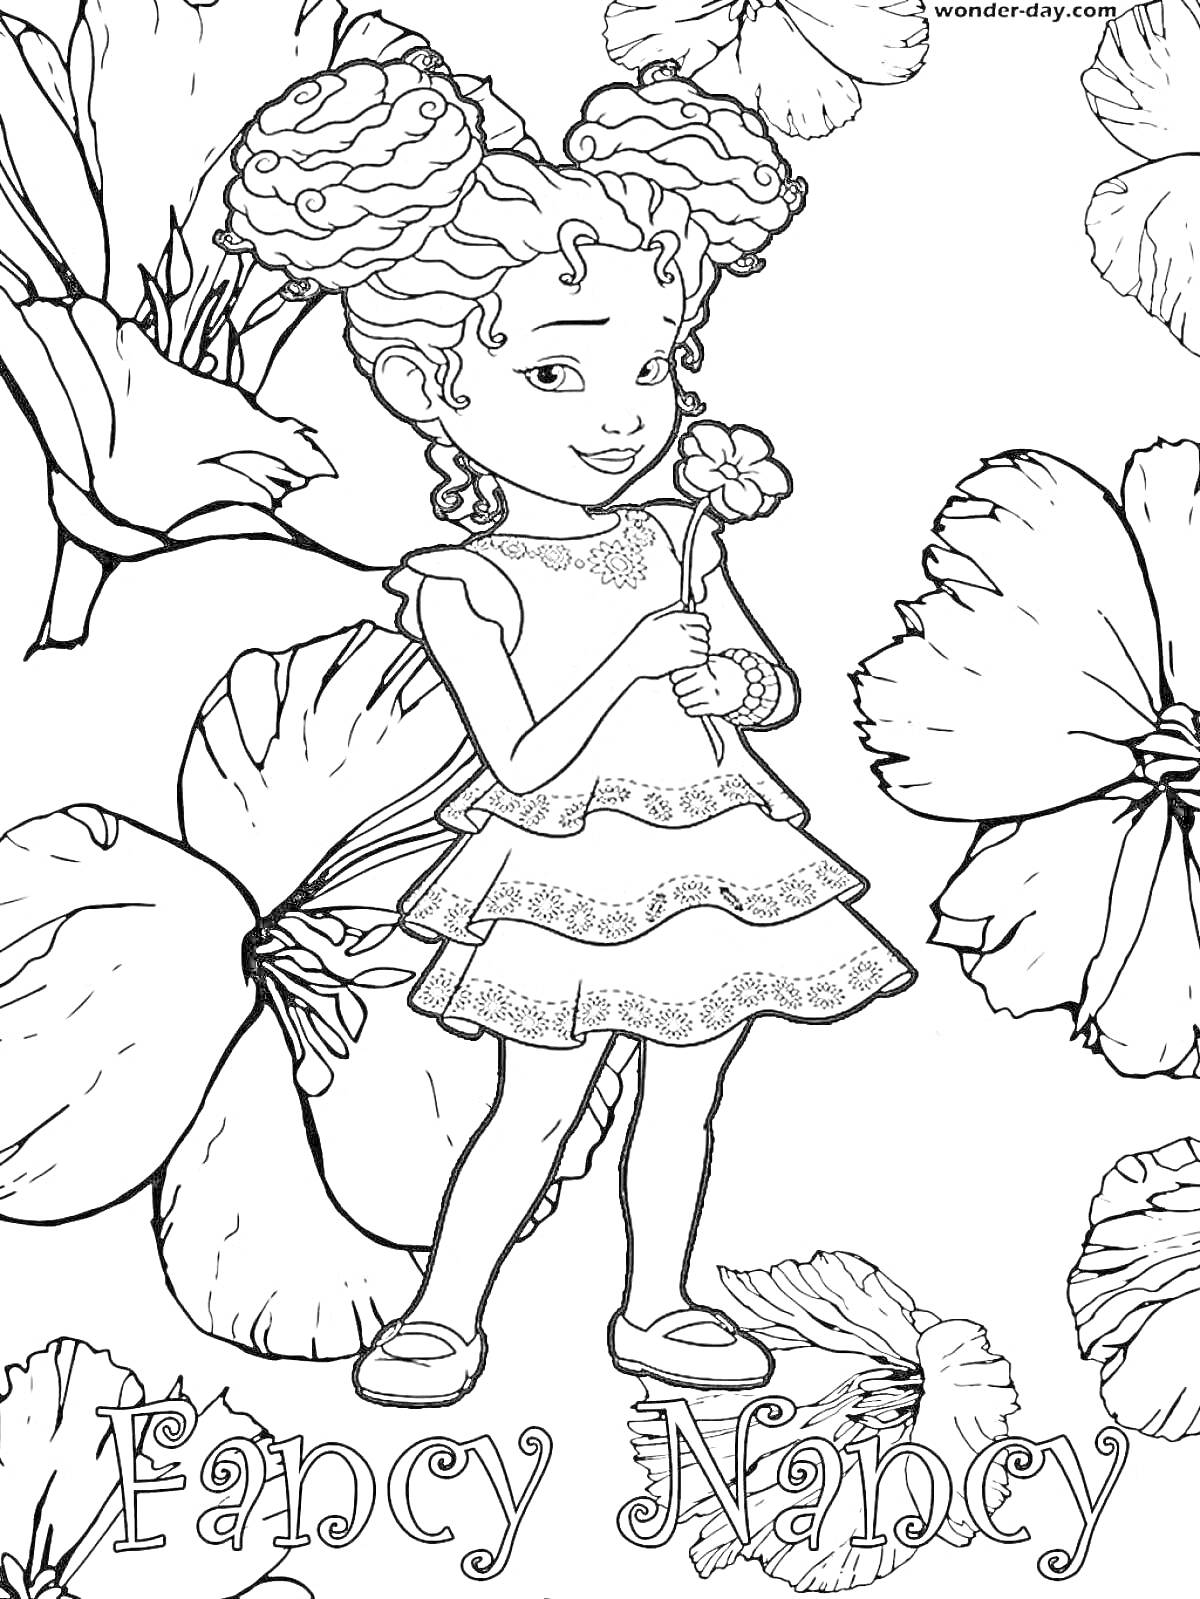 Раскраска Fancy Nancy с цветами; девочка в платье, держащая цветок, на фоне больших цветов